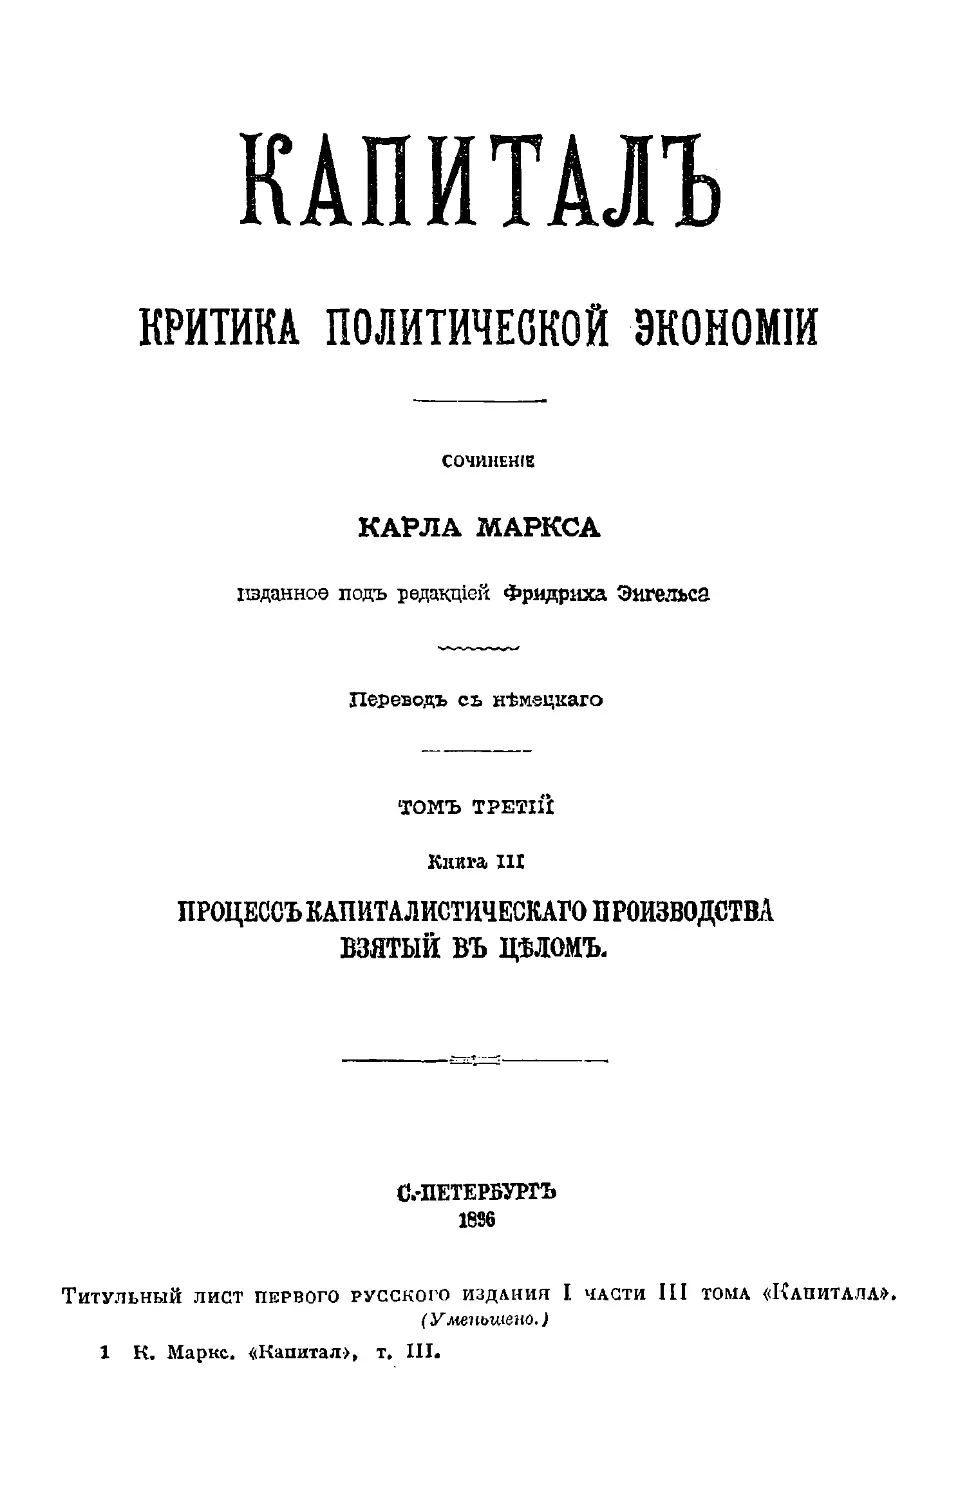 Титульный лист первого русского издания I части III тома «Капитала».